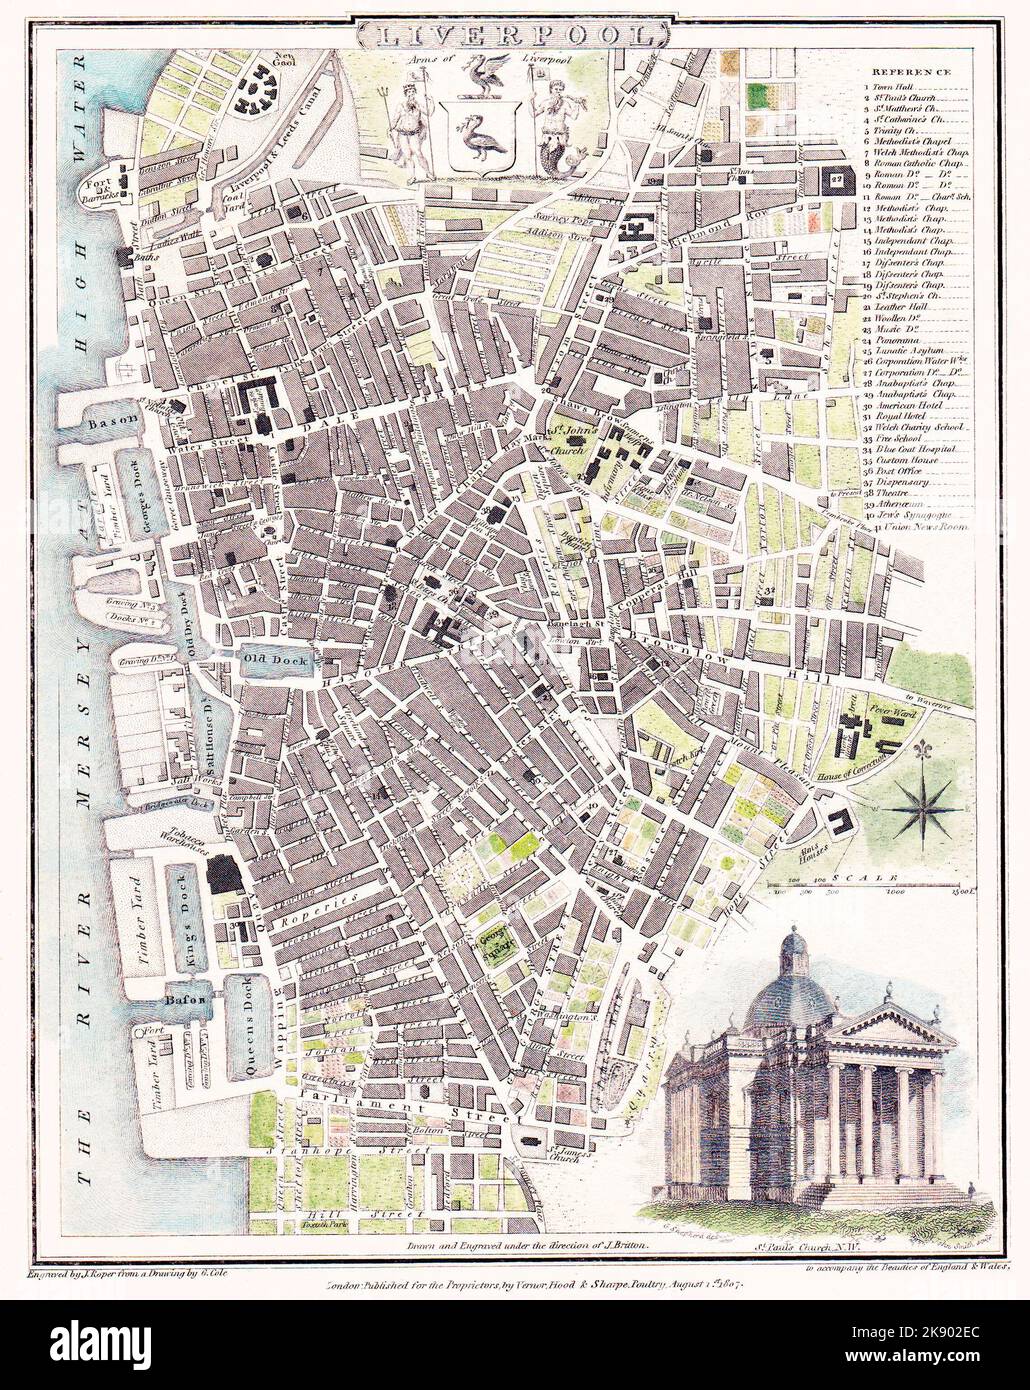 La carte de Liverpool de Roper & Cole en 1807, alors qu'elle était sur le point de se transformer d'une ville à l'autre, avec les premières banlieues établies et seulement dix quais. La décoration principale sur la carte est une gravure de l'église Saint-Paul, qui se trouvait juste à l'ouest du chemin de fer à l'entrée de la gare de change. Le top centre est un blason de Liverpool. Il y a deux oiseaux de foie flanqués de Neptune et de Triton qui détiennent respectivement les drapeaux d'un autre oiseau de foie et d'un navire. Il convient également de mentionner un fort et une caserne sur le Mersey, reflétant la menace d'une invasion française. Banque D'Images